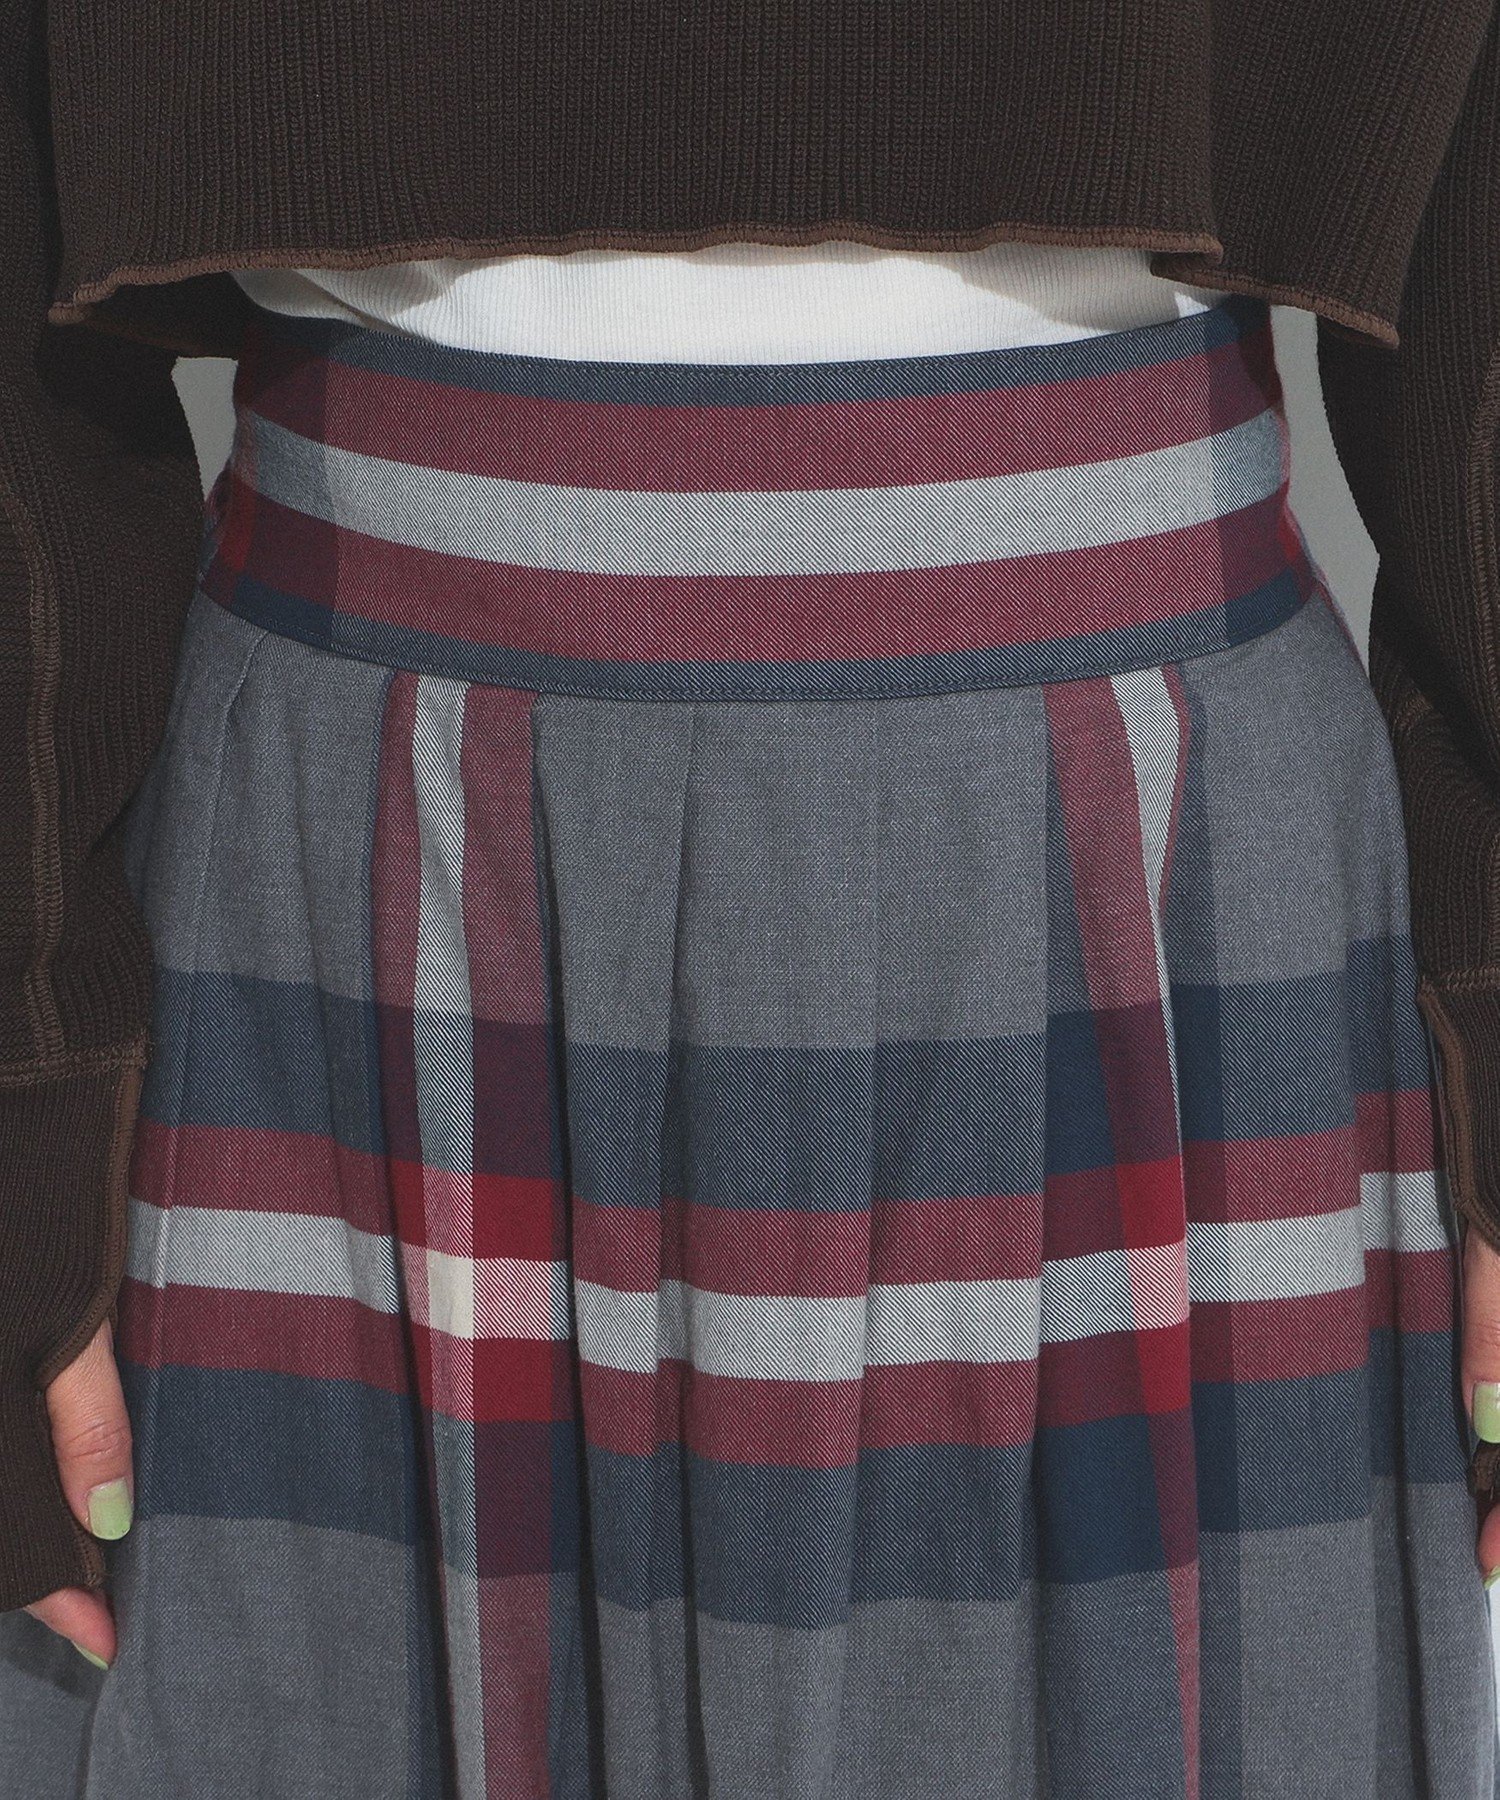 【セットアップ対応】BEAMS BOY / ビッグタータン スカート 23FW チェック柄 ロングスカート マキシスカート 定番デザイン